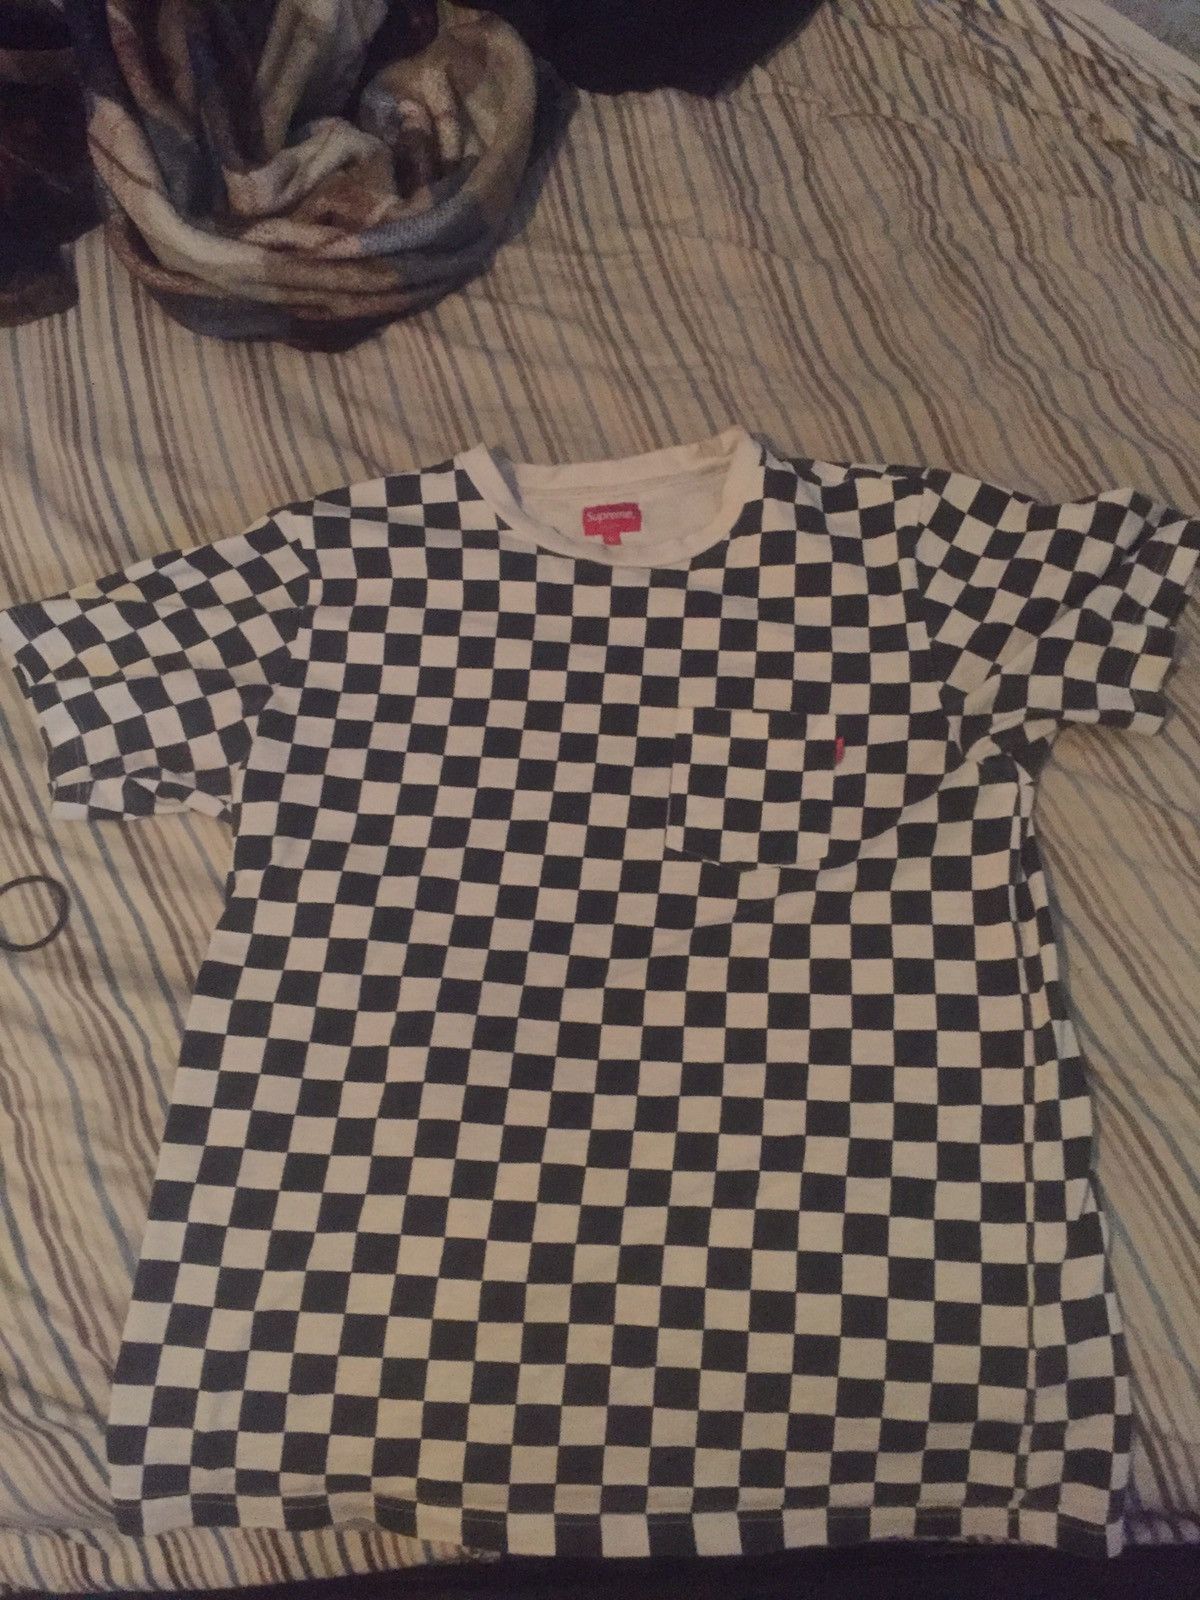 Supreme Supreme Checkered Pocket T Shirt | Grailed